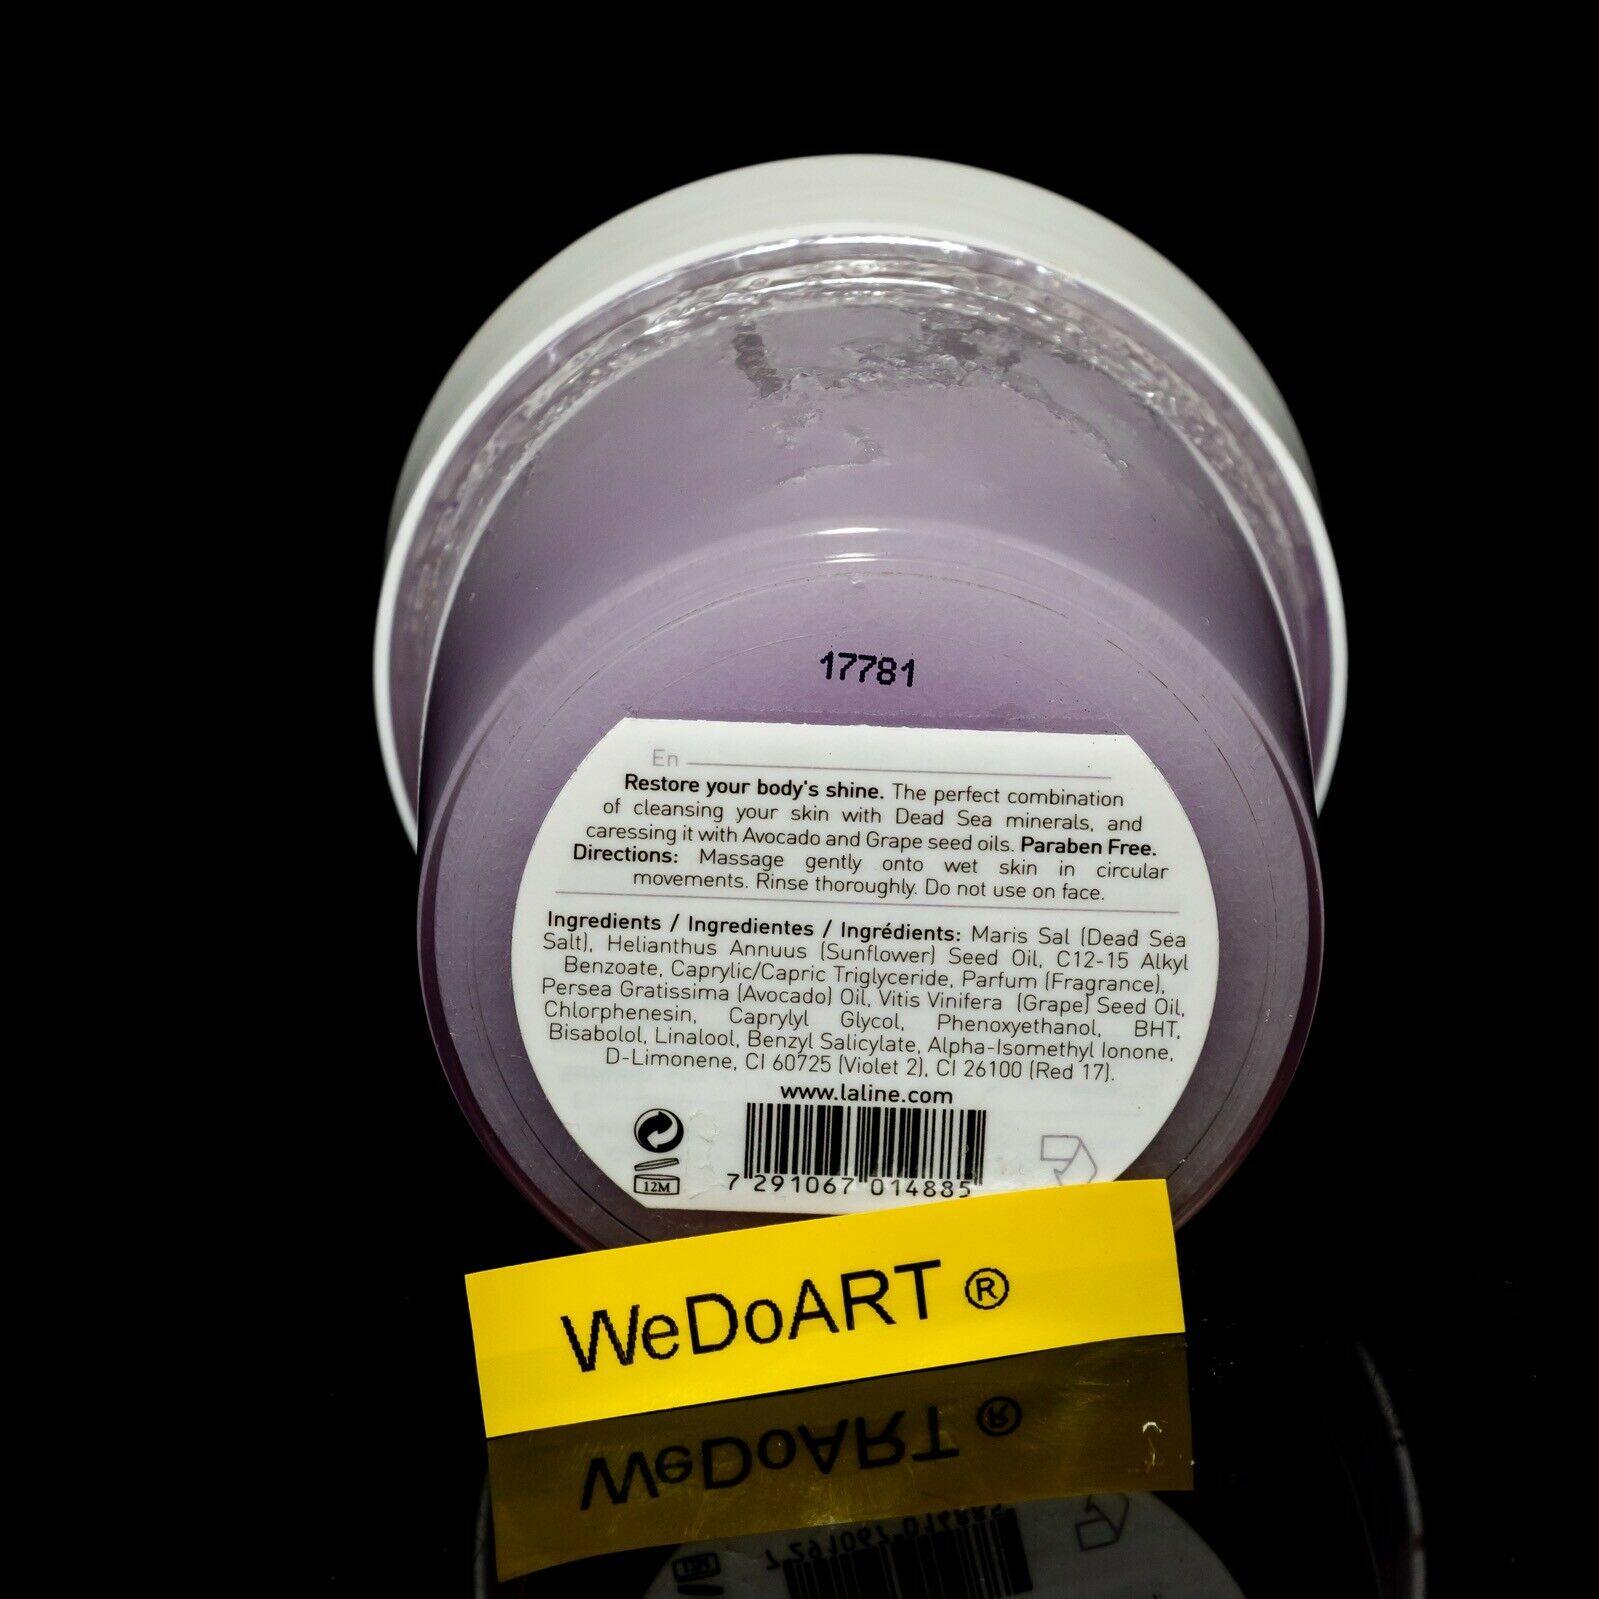 Laline body scrub Violet Amber 240g - 8.54oz - WEDOART-IL